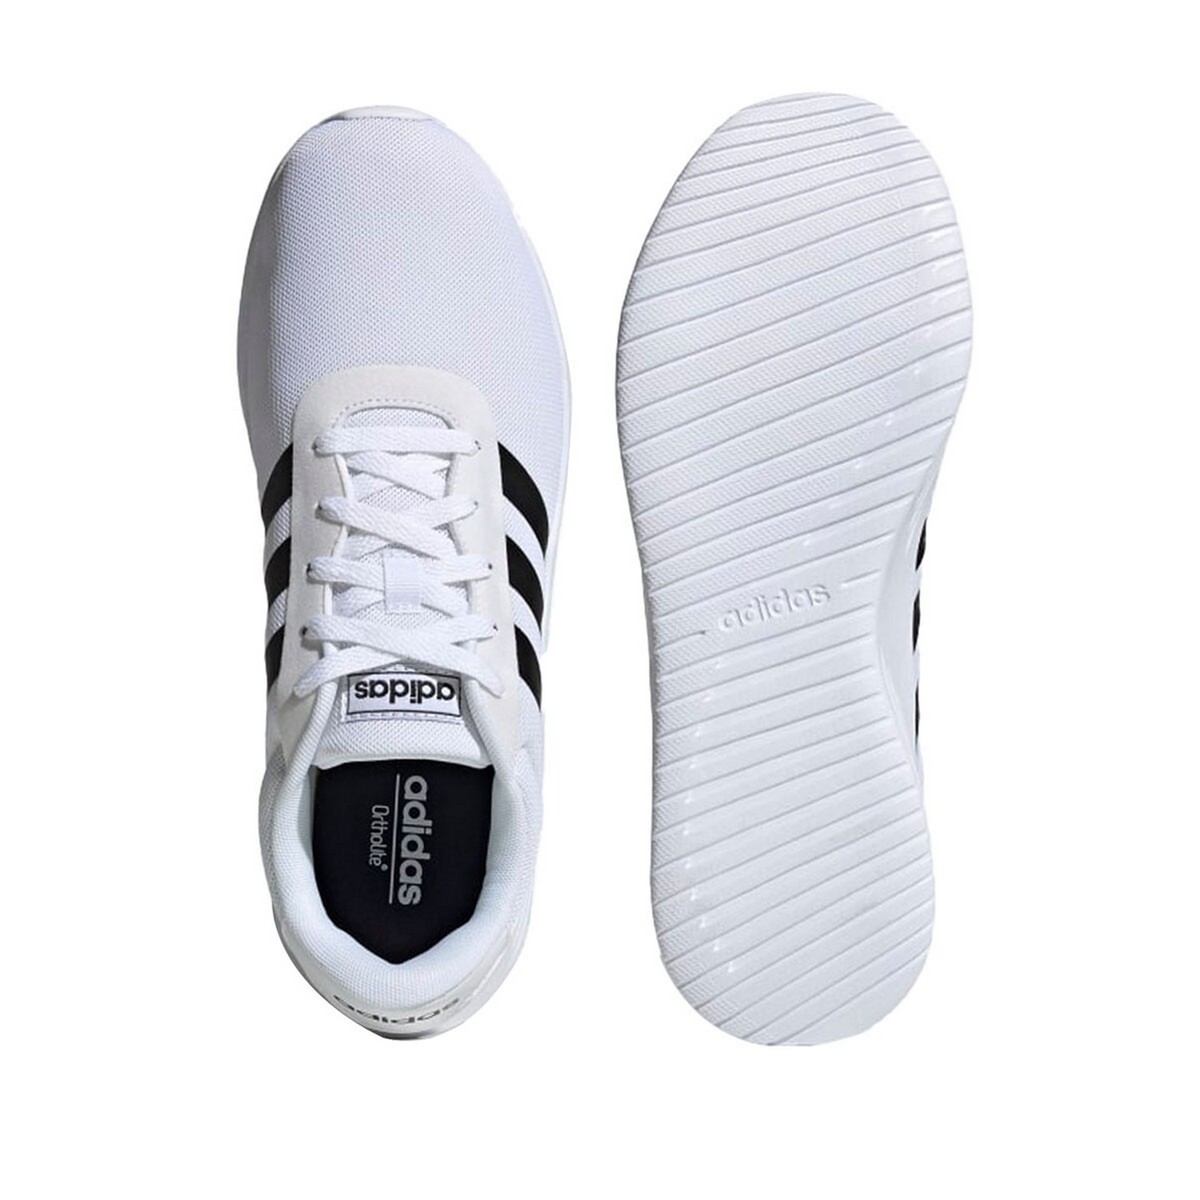 Adidas Mens Sports Shoes EG3282, 6